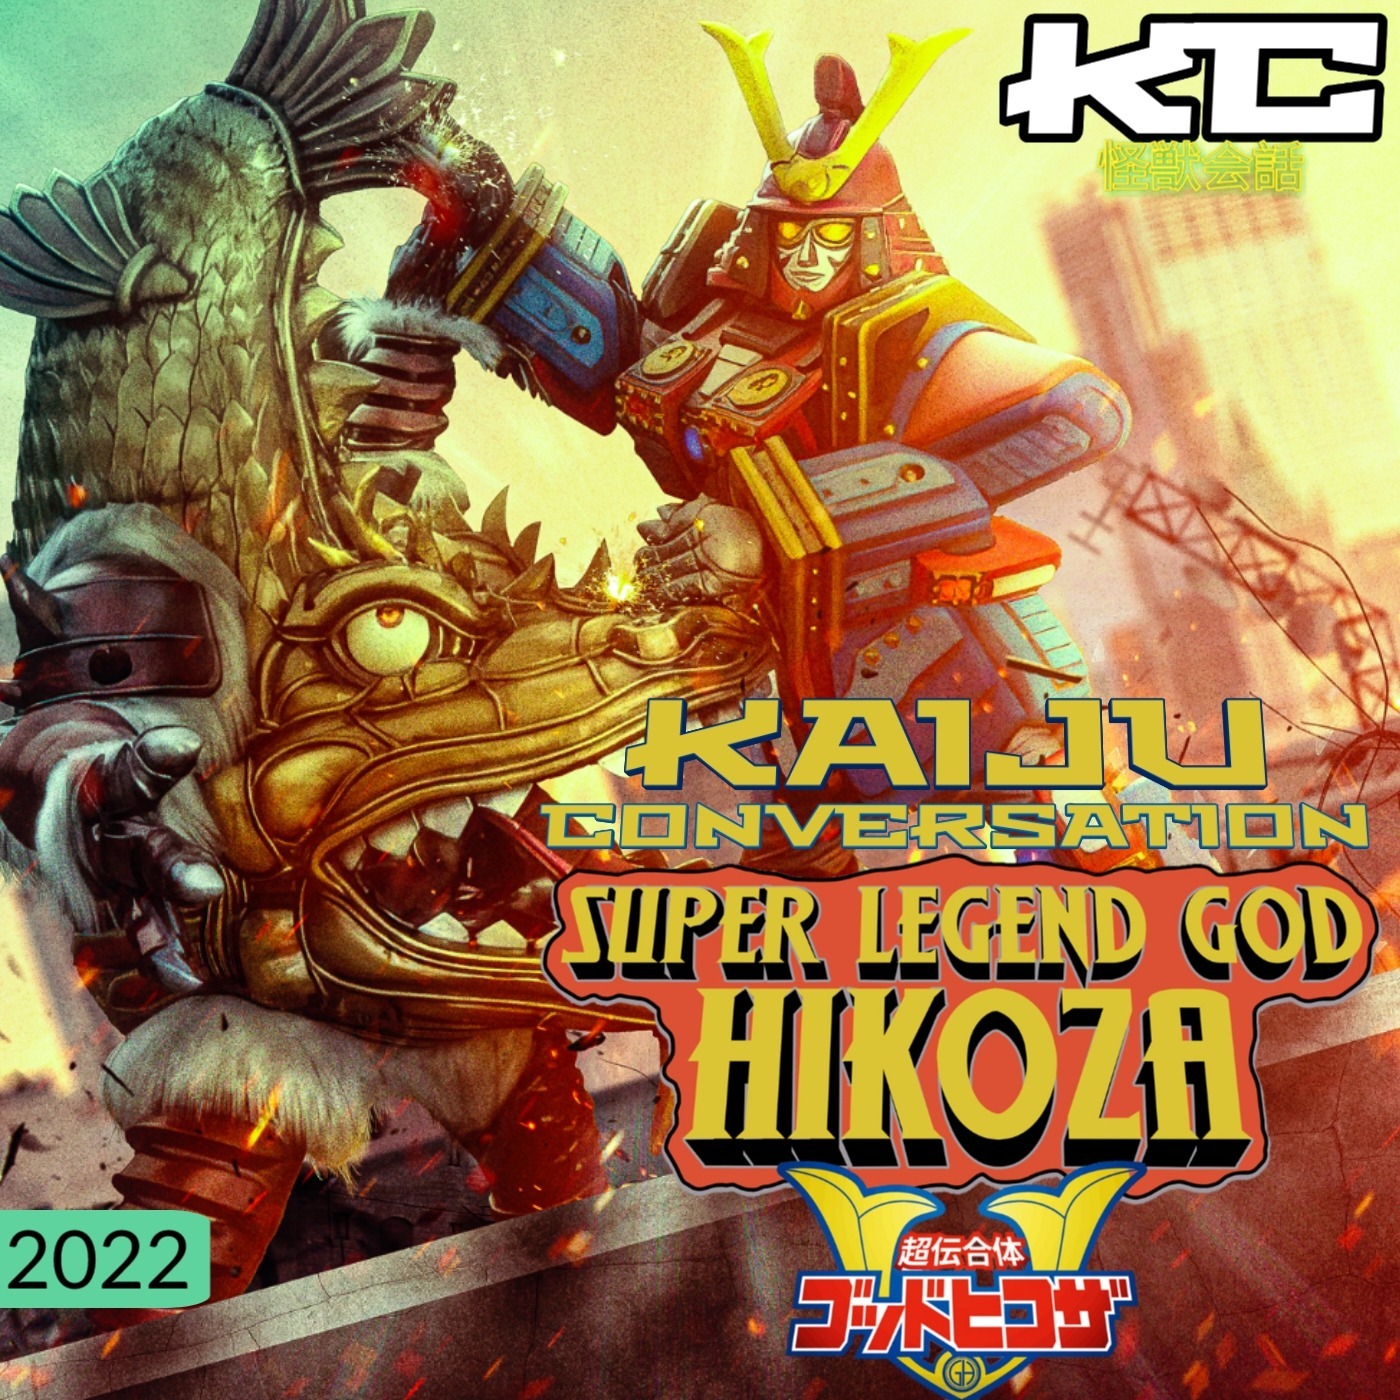 Episode 92: Super Legend God Hikoza (2022)